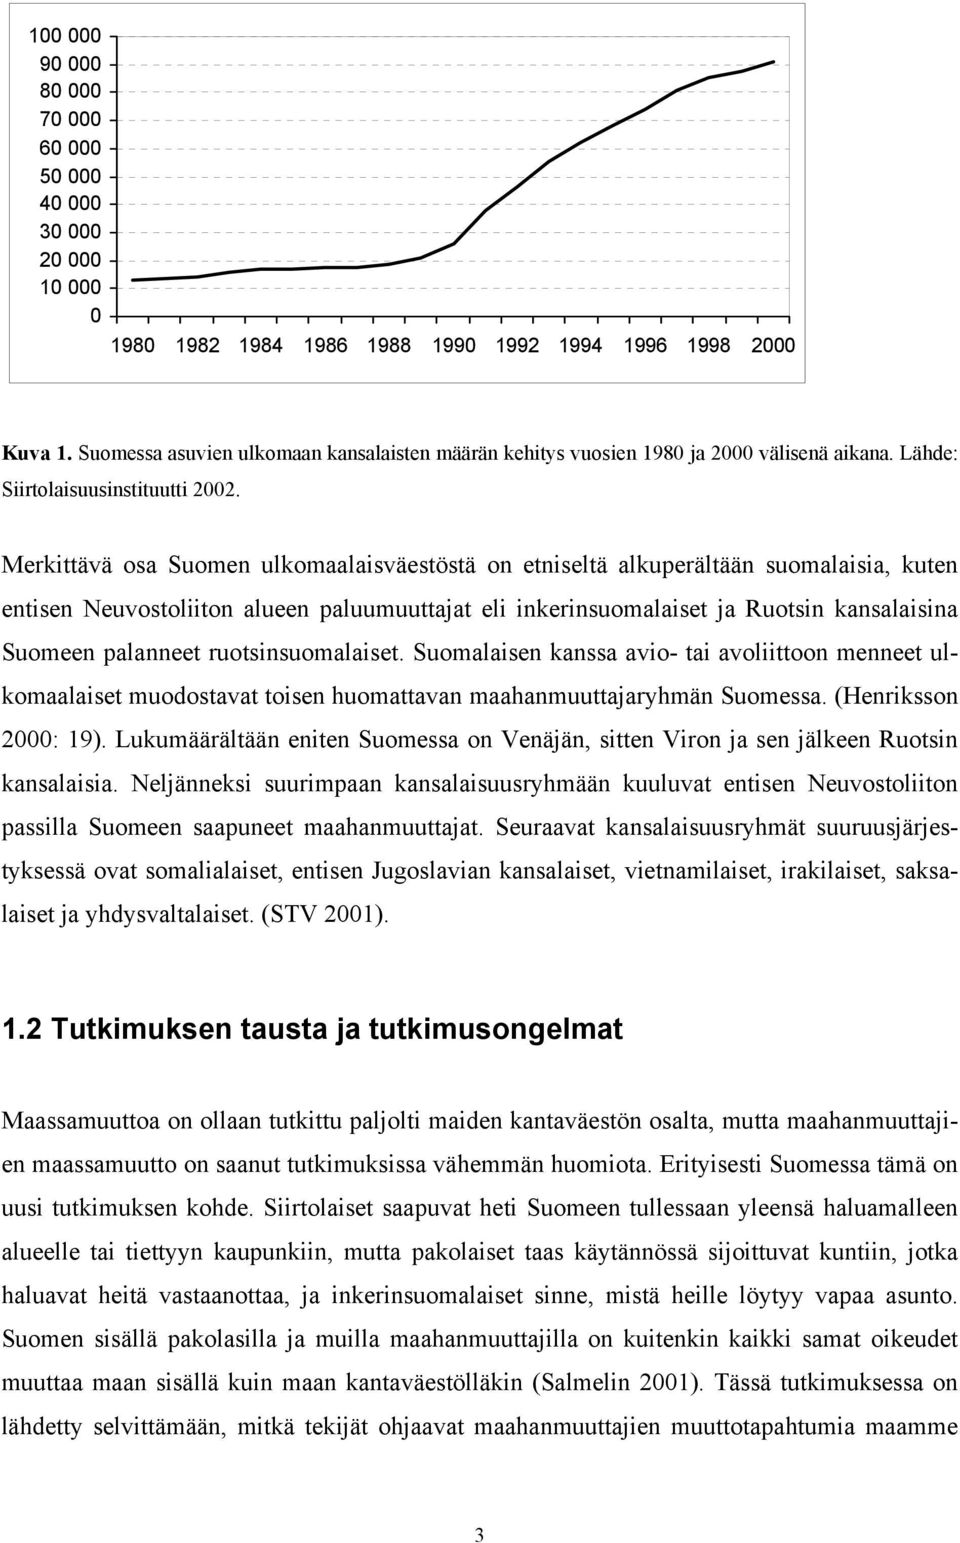 Merkittävä osa Suomen ulkomaalaisväestöstä on etniseltä alkuperältään suomalaisia, kuten entisen Neuvostoliiton alueen paluumuuttajat eli inkerinsuomalaiset ja Ruotsin kansalaisina Suomeen palanneet